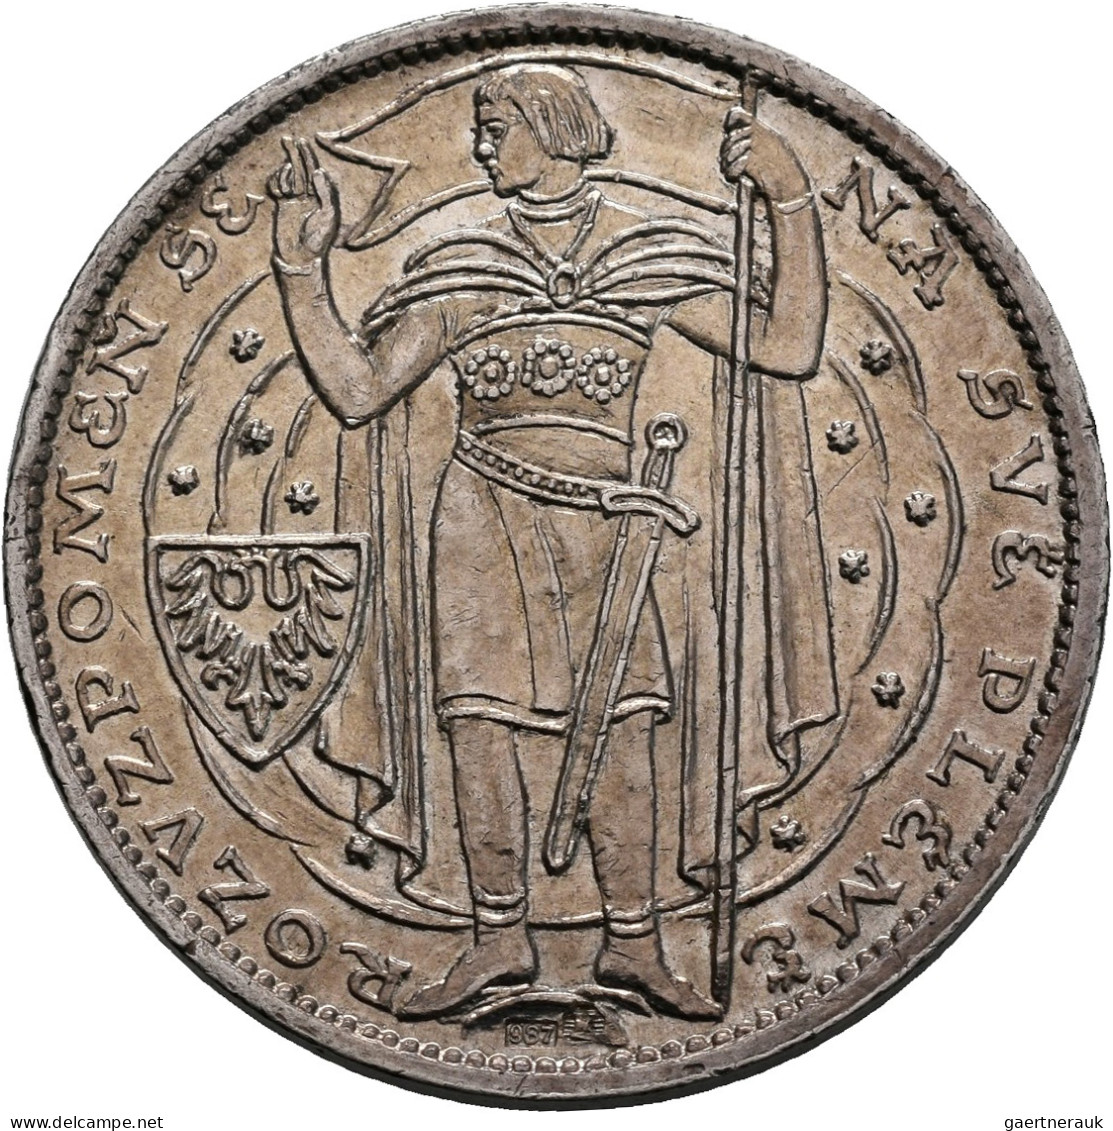 Tschechoslowakei: Ag Medaille Von Otakar Spaniel Millenium St. Wenzel 929 - 1929 - Checoslovaquia